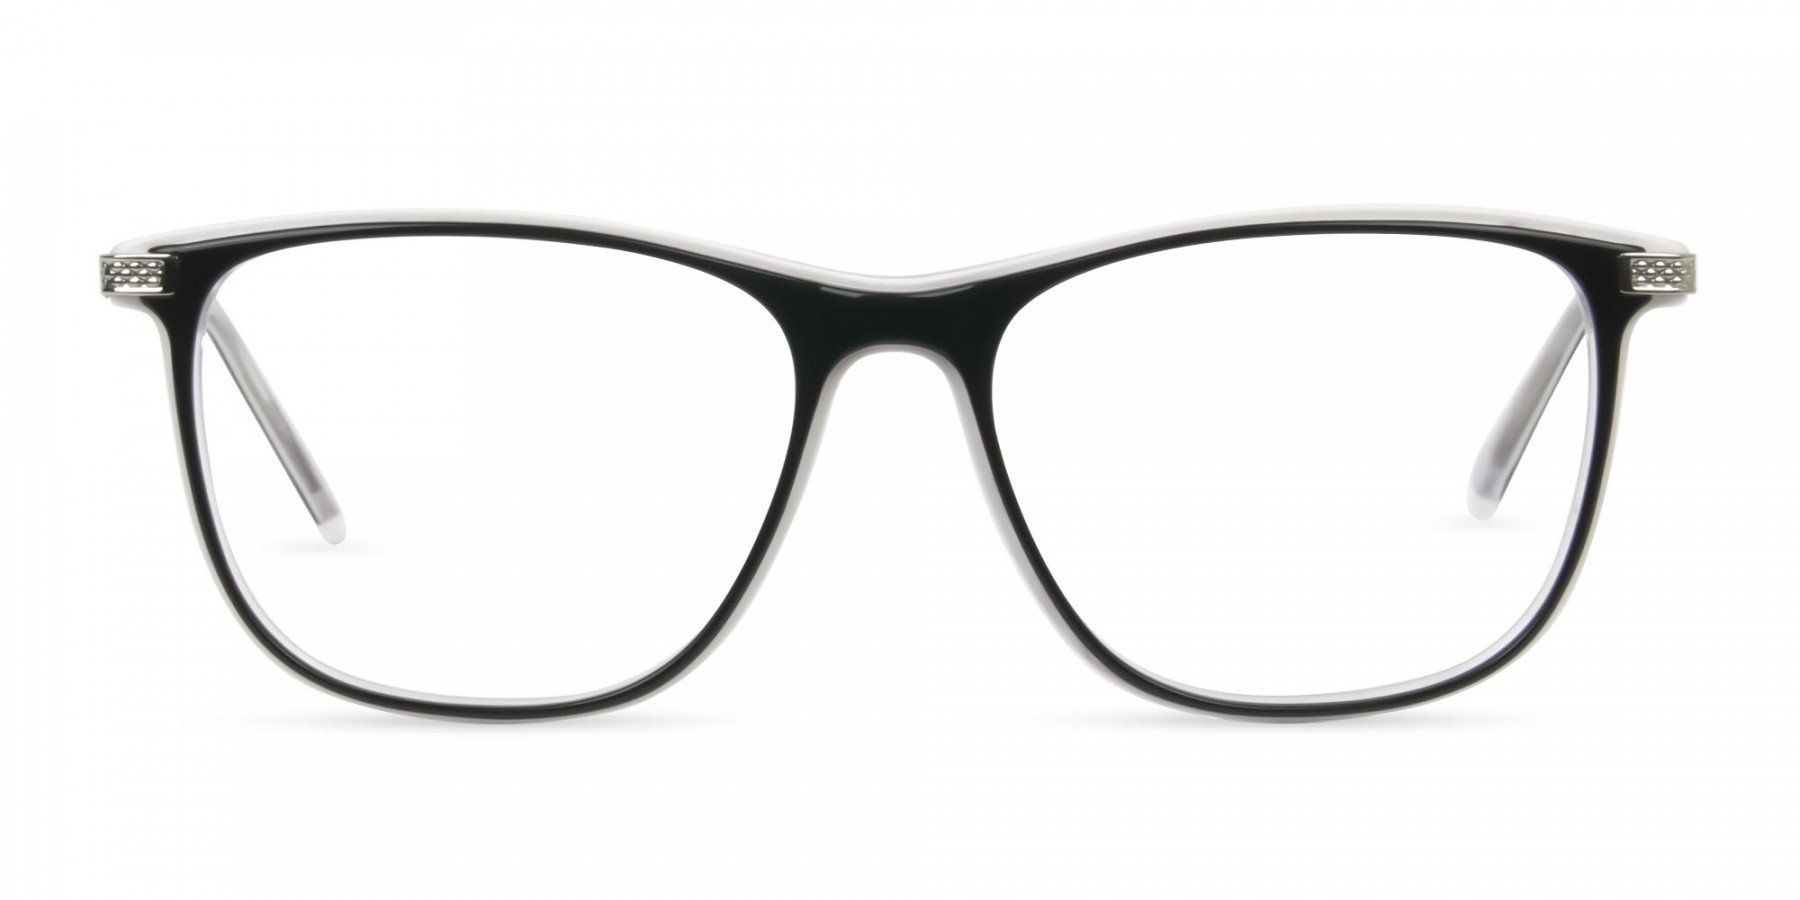 Black-and-White-Rectangular-Wayfarer-Glasses - 1